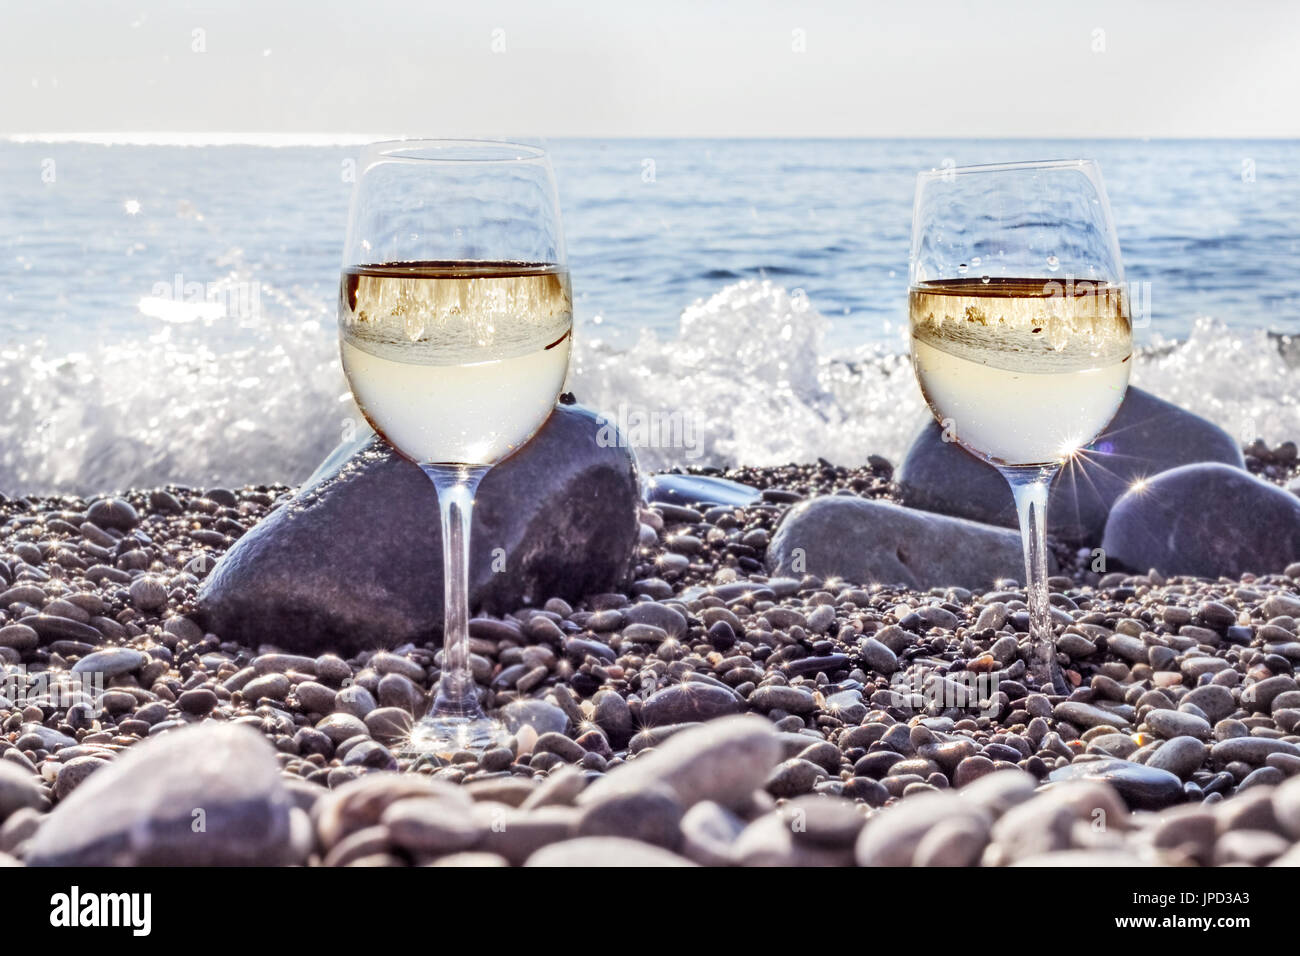 Zwei Gläser Weißwein am Strand in der Nähe von Meer in glücklicher Morgen  Stockfotografie - Alamy